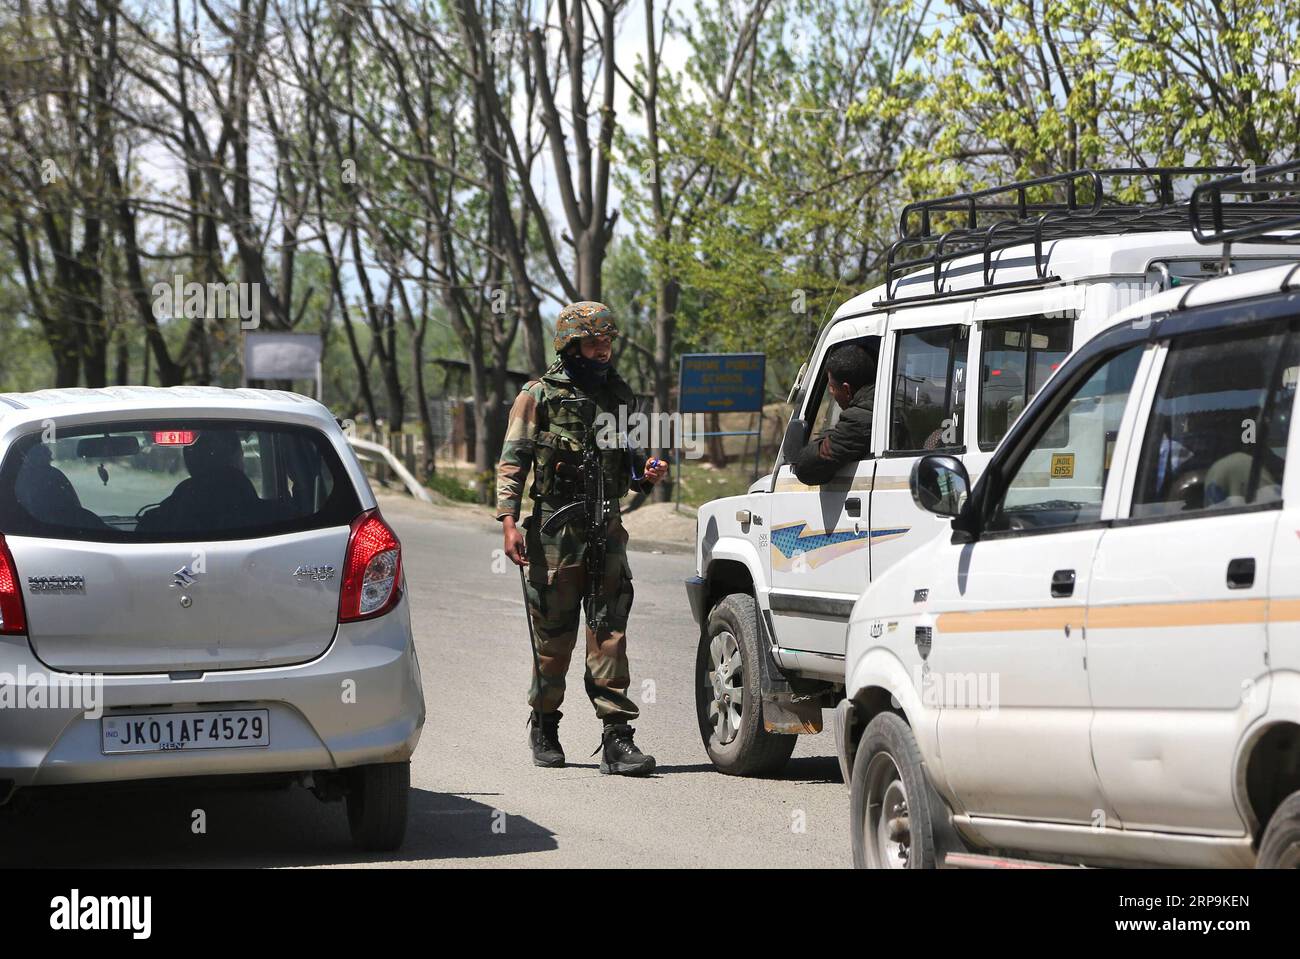 (190410) -- SRINAGAR, 10 avril 2019 (Xinhua) -- un soldat paramilitaire indien arrête la circulation civile pendant le confinement de sécurité sur une autoroute à la périphérie de la ville de Srinagar, capitale estivale du Cachemire contrôlé par l'Inde, 10 avril 2019. La circulation civile n'est pas autorisée sur l'autoroute dans le Cachemire contrôlé par l'Inde pendant deux jours par semaine (dimanche et mercredi) pendant les prochaines élections générales indiennes, ont déclaré les responsables. (Xinhua/Javed Dar) CACHEMIRE-SRINAGAR-CONFINEMENT DE SÉCURITÉ SUR LA ROUTE PUBLICATIONxNOTxINxCHN Banque D'Images